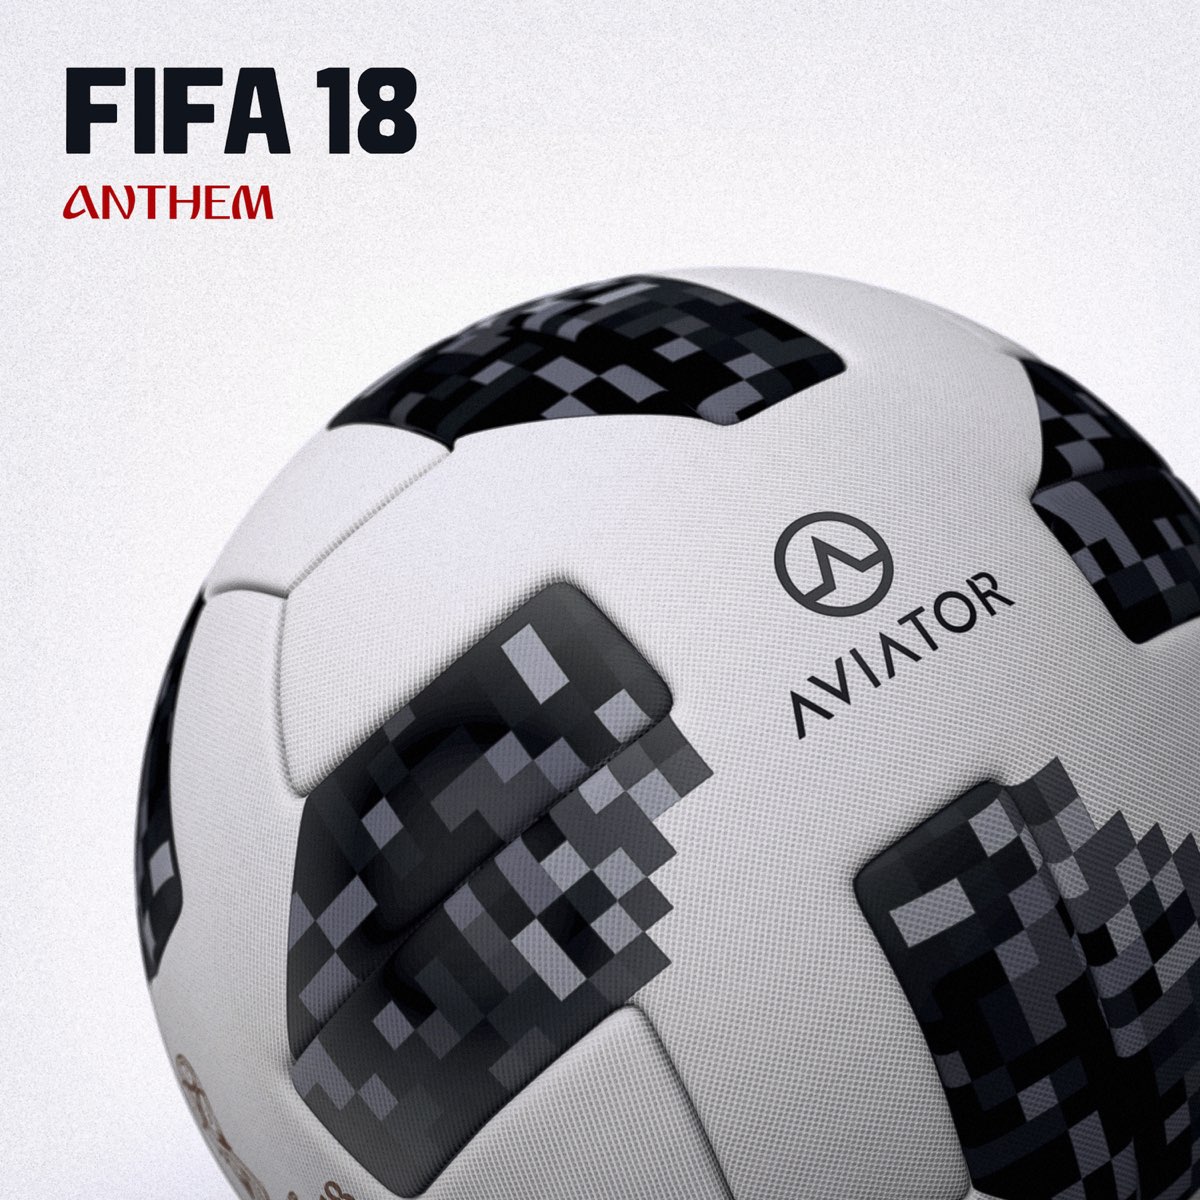 Aviatorの Fifa Anthem 18 Single をapple Musicで